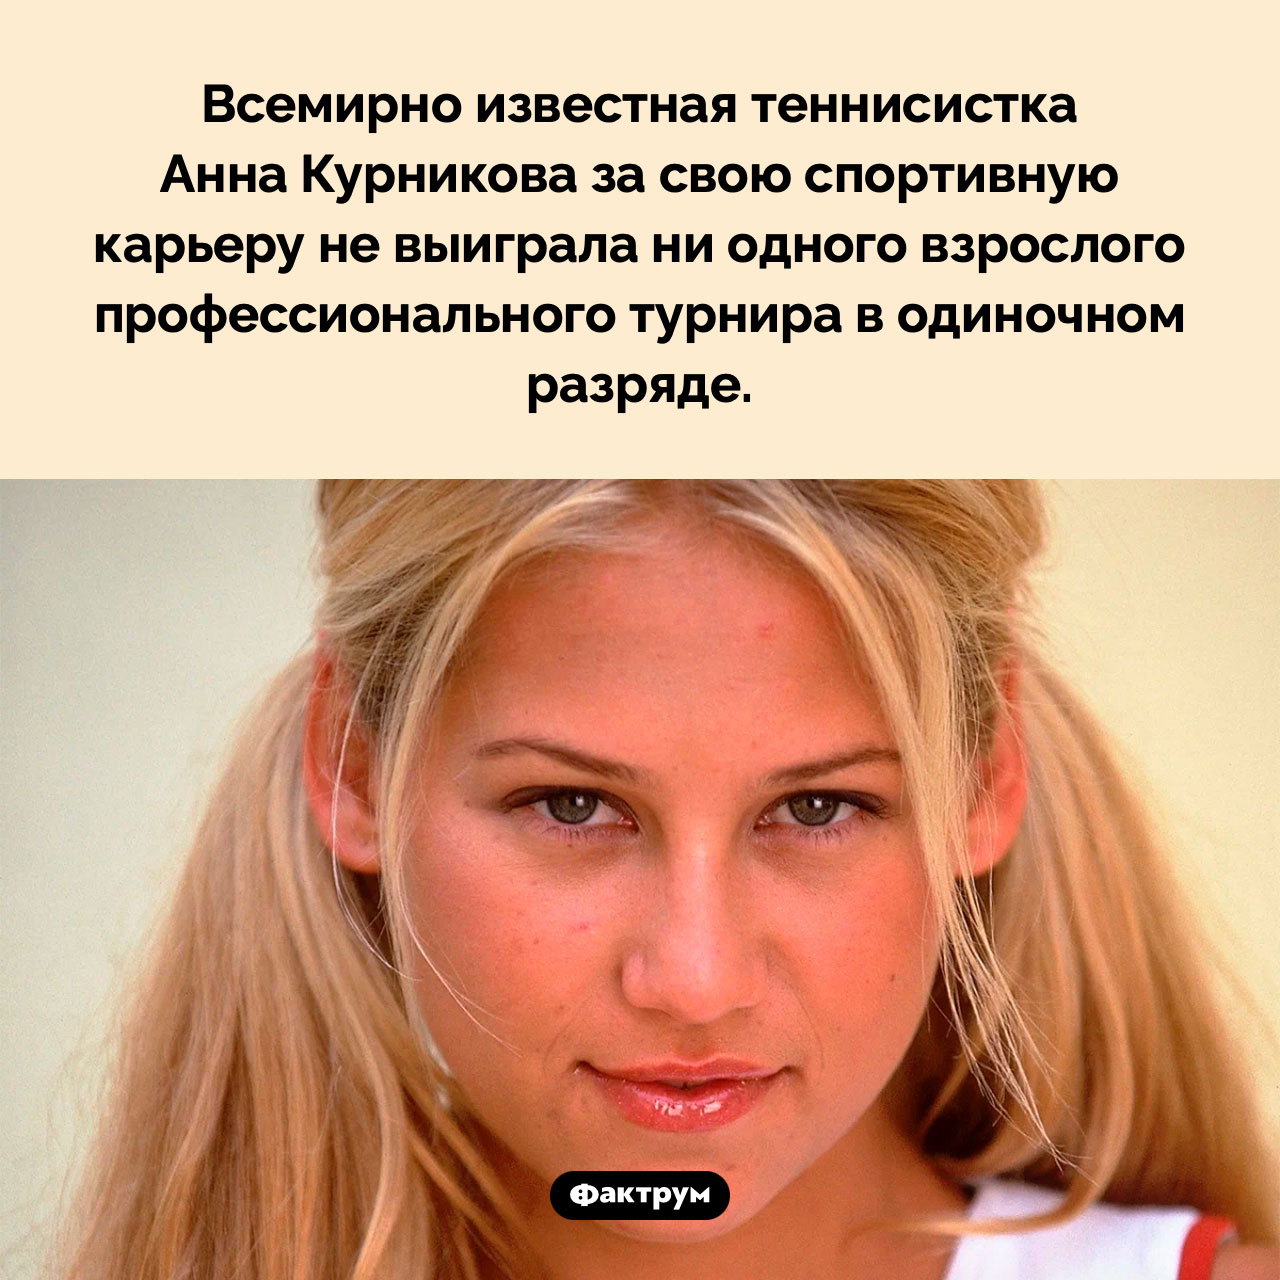 Анна Курникова не выигрывала взрослых турниров в одиночном разряде